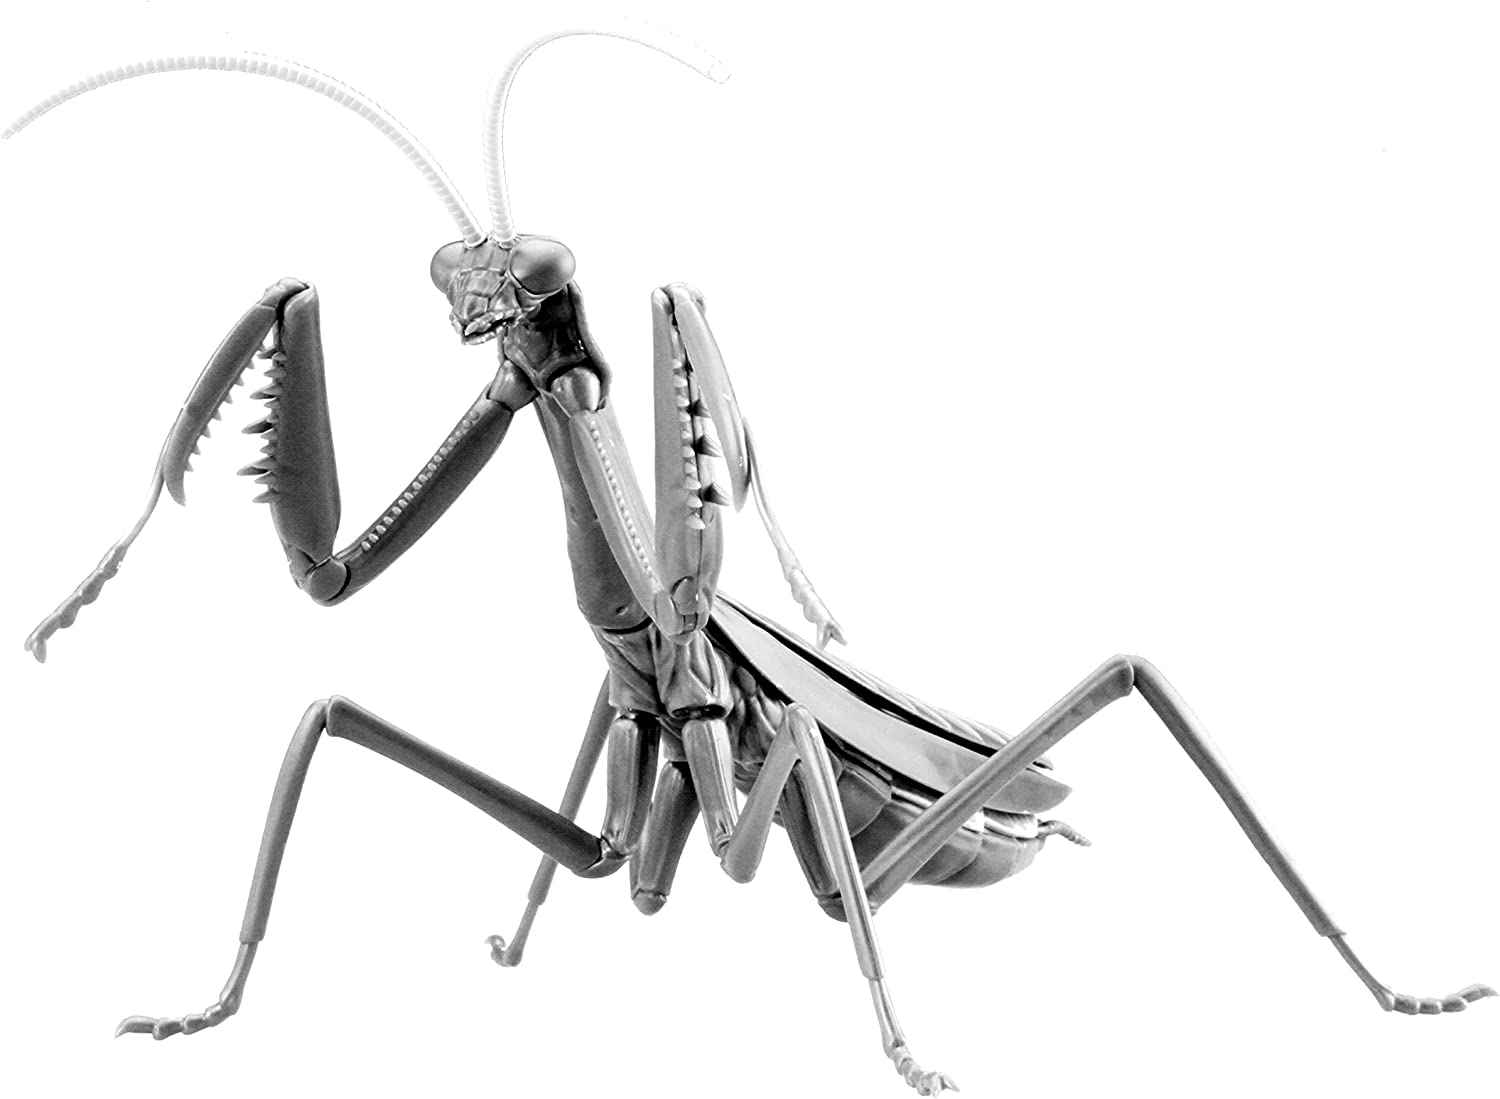 Biology Edition Big Mantis Special Version (Metallic Silver)